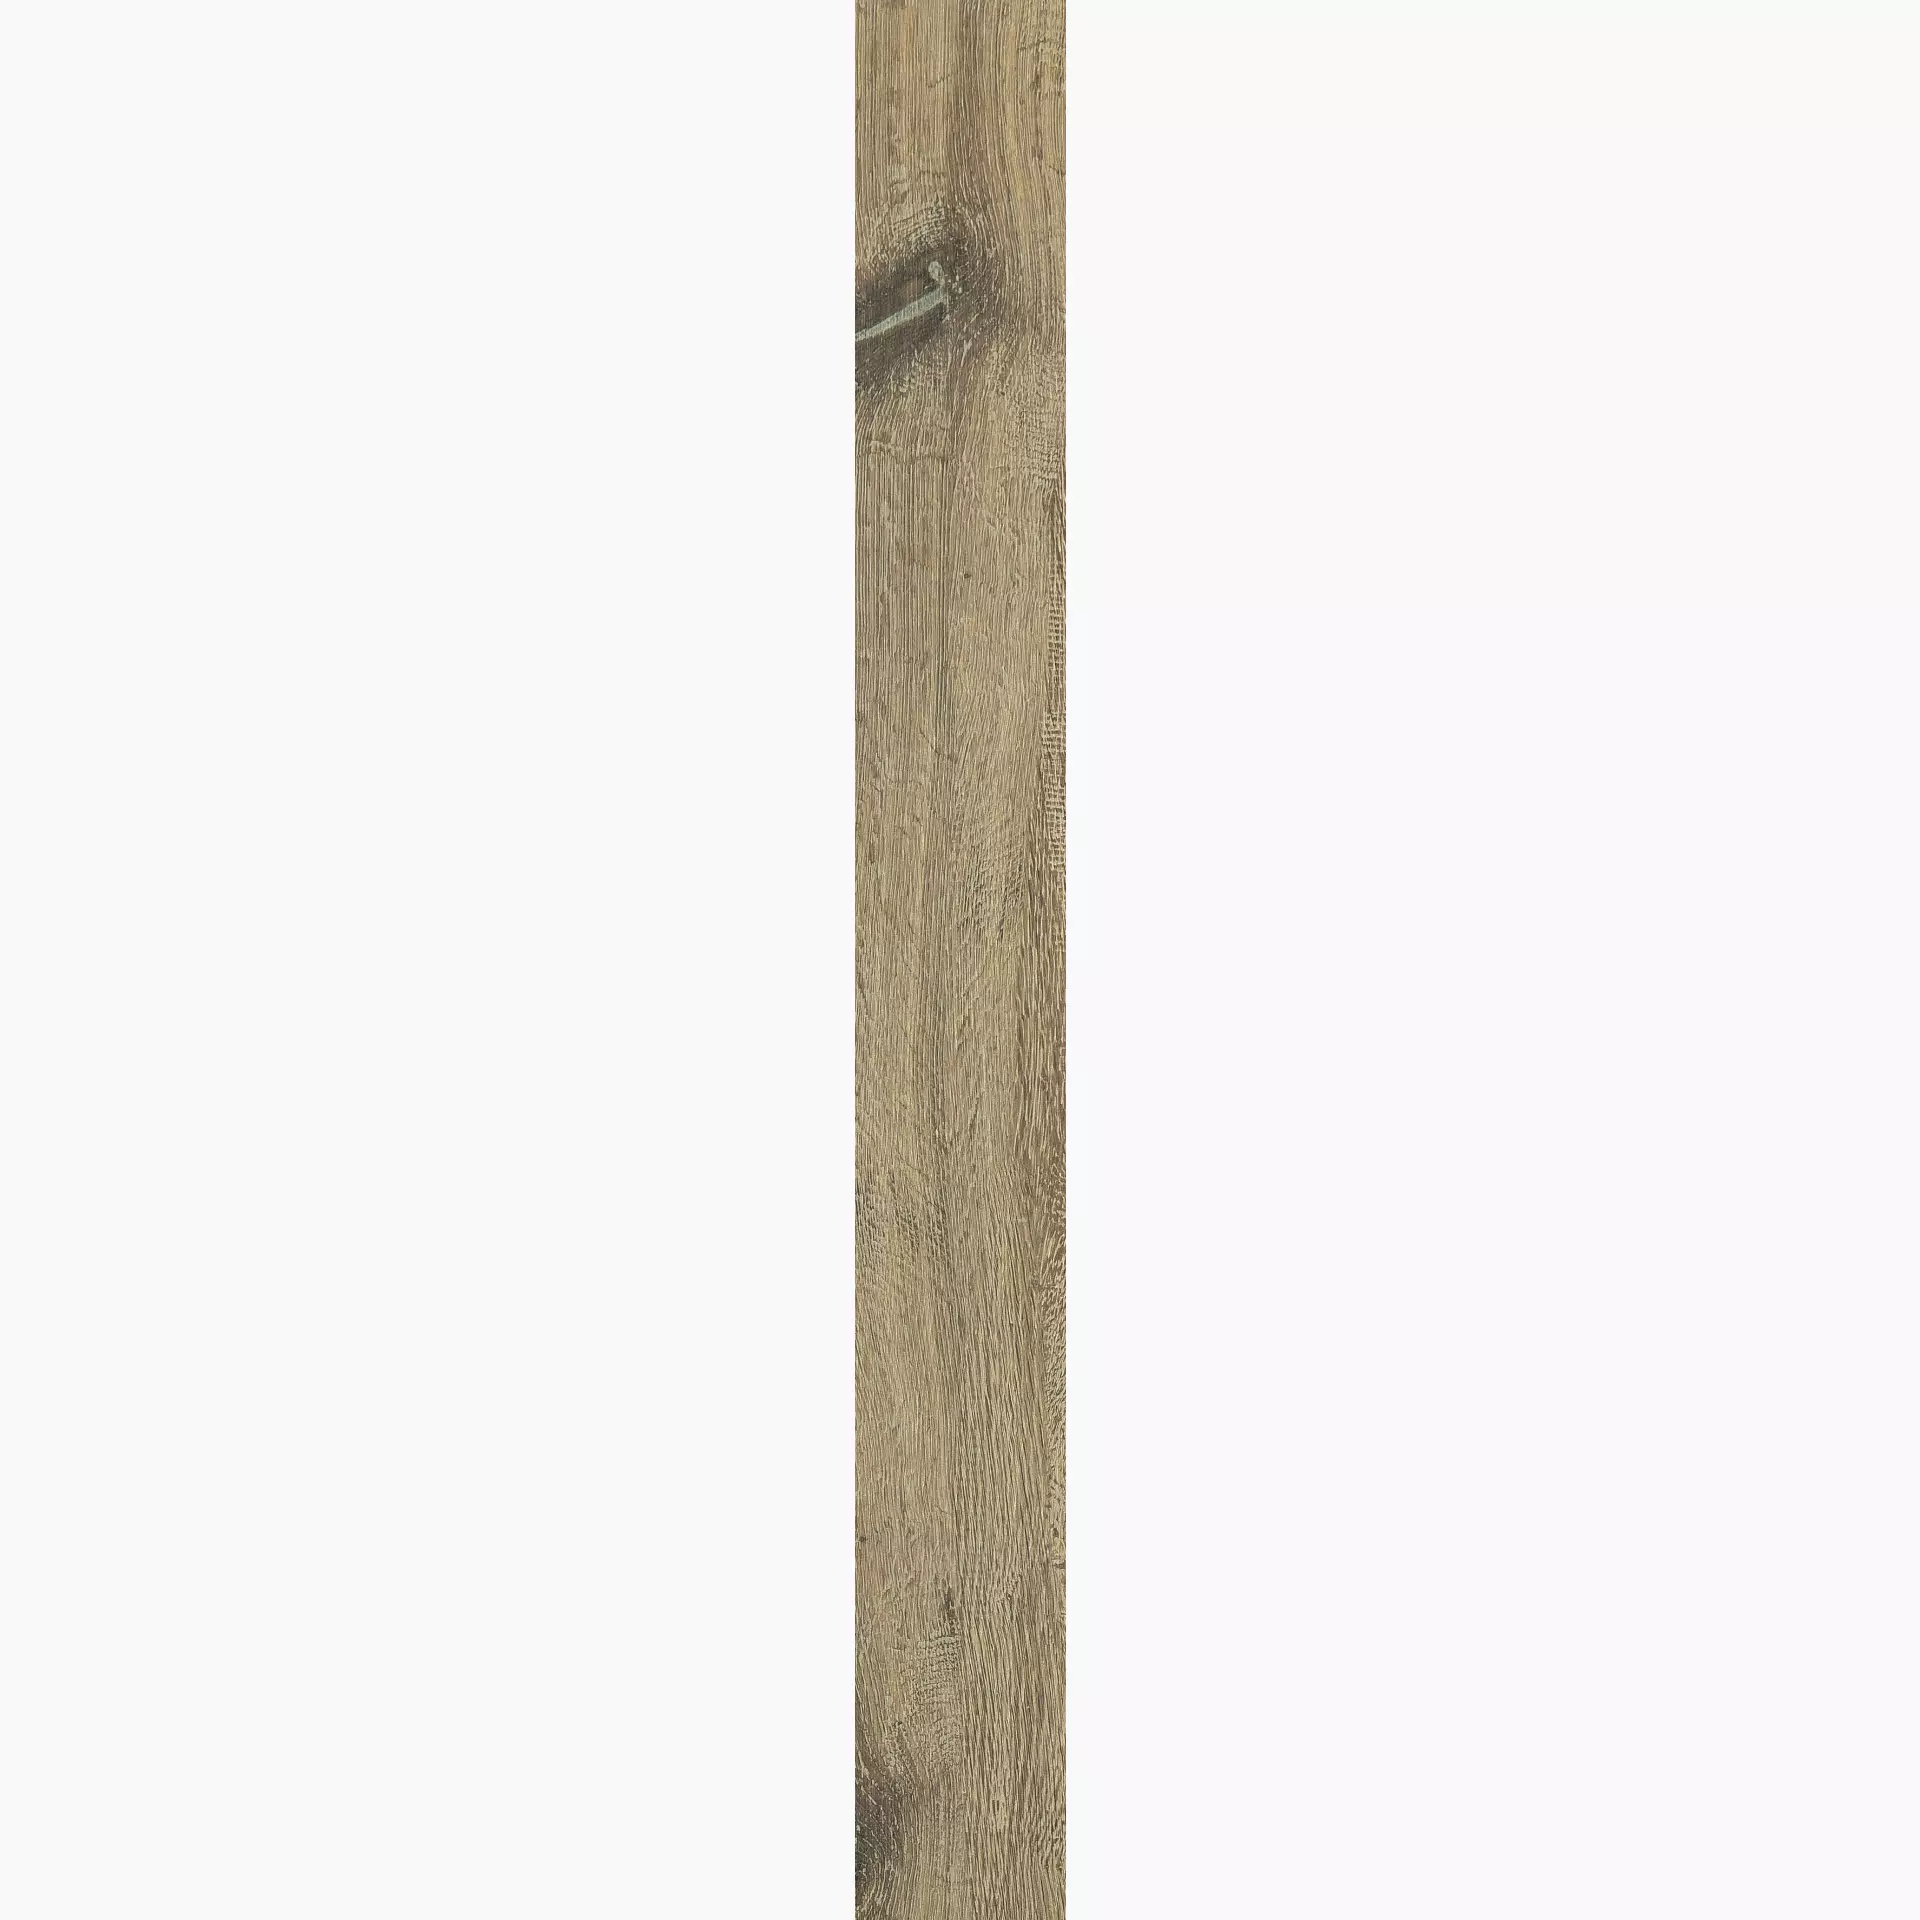 Florim Planches De Rex Noisette Naturale – Matt 755702 20x180cm rectified 9mm